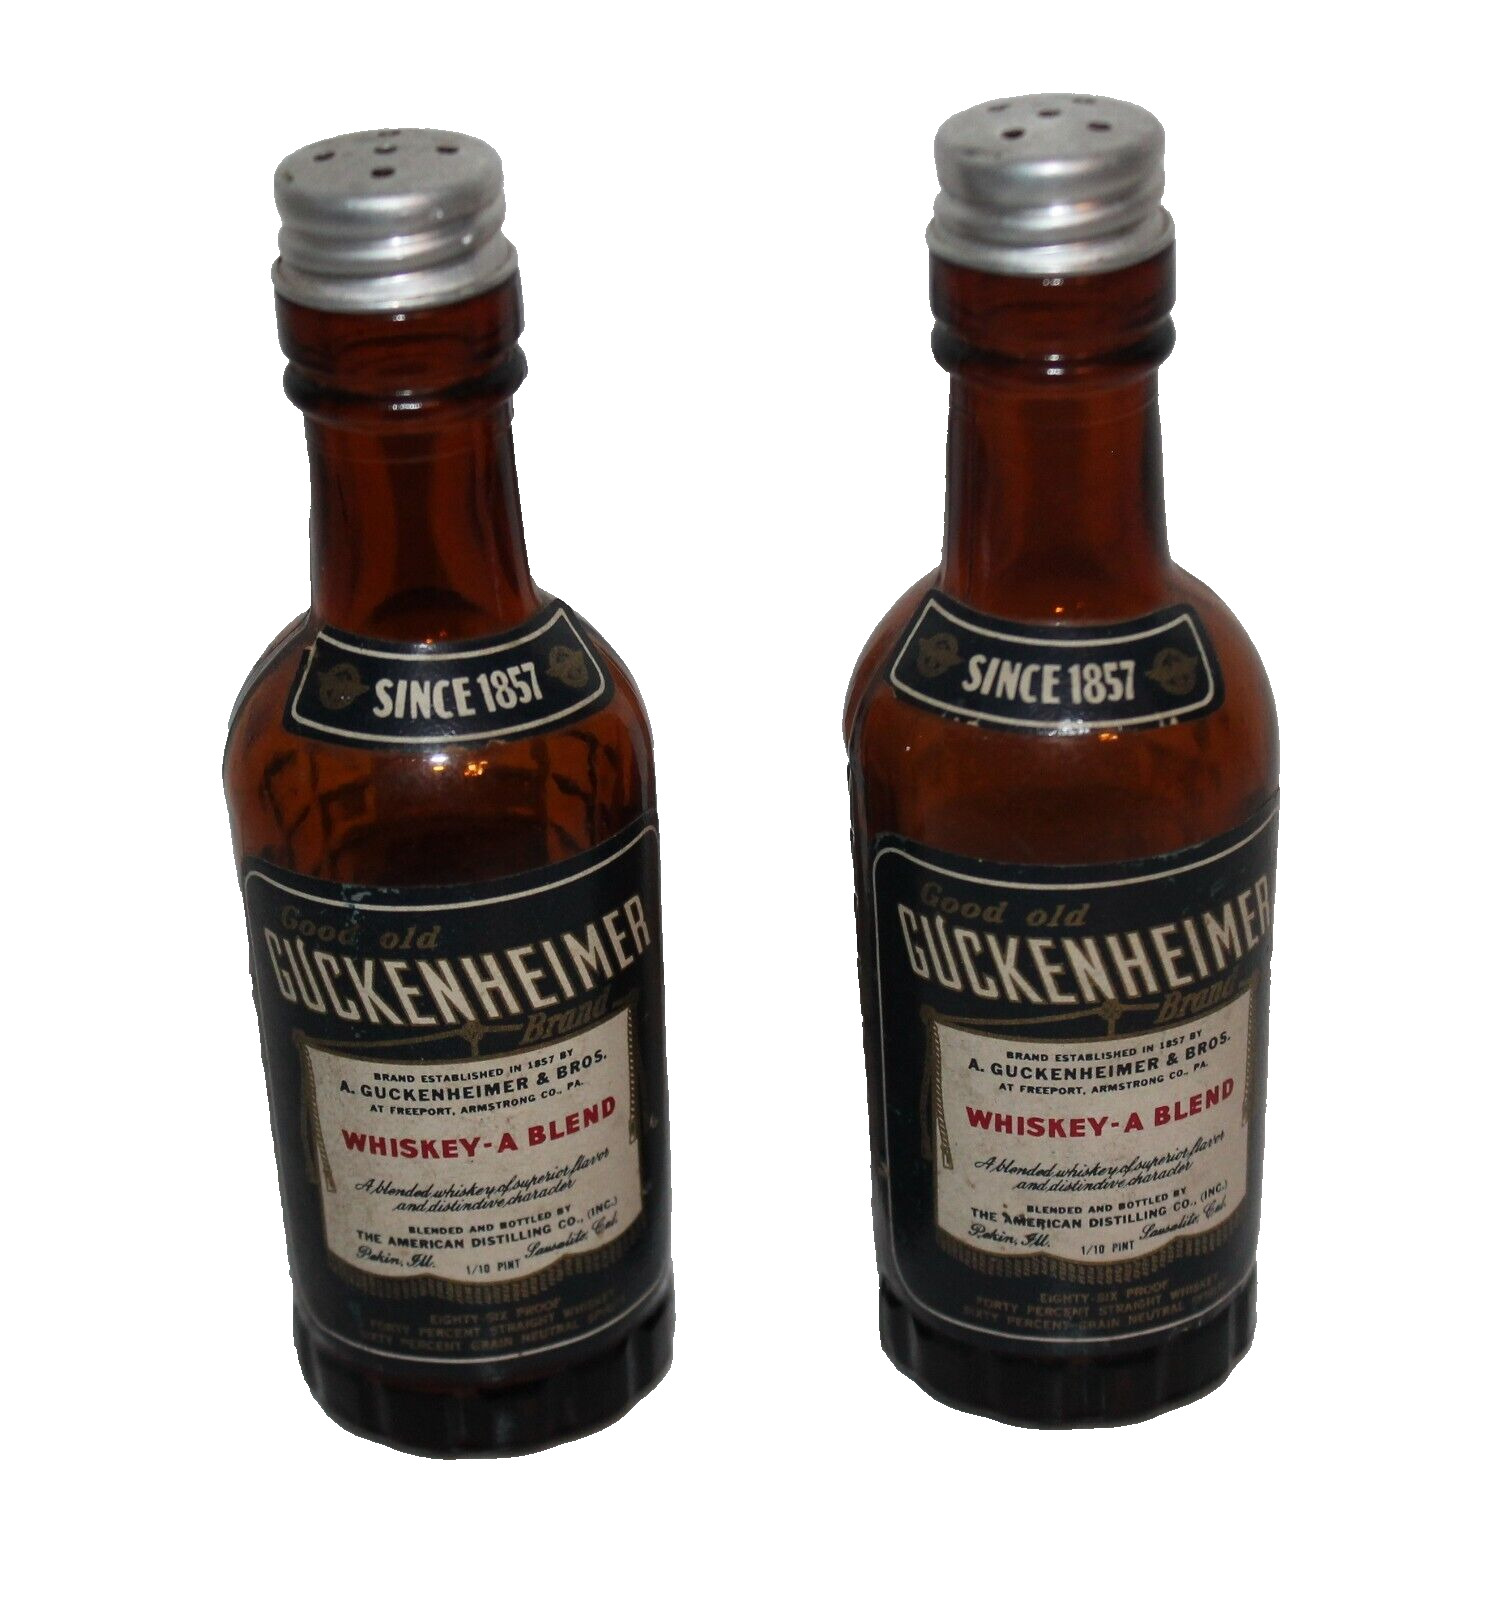 VTG Salt & Pepper Shakers Guckenheimer Whiskey Beer Bottles Collectable